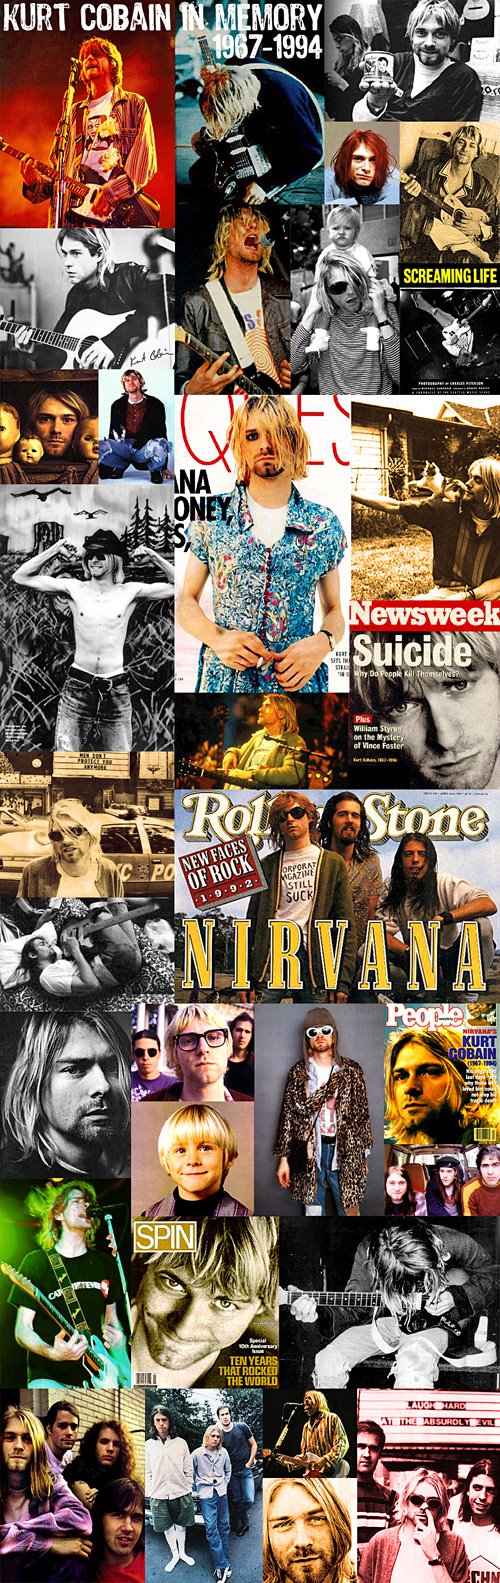 [thum-tribute-to-kurt-cobain.jpg]